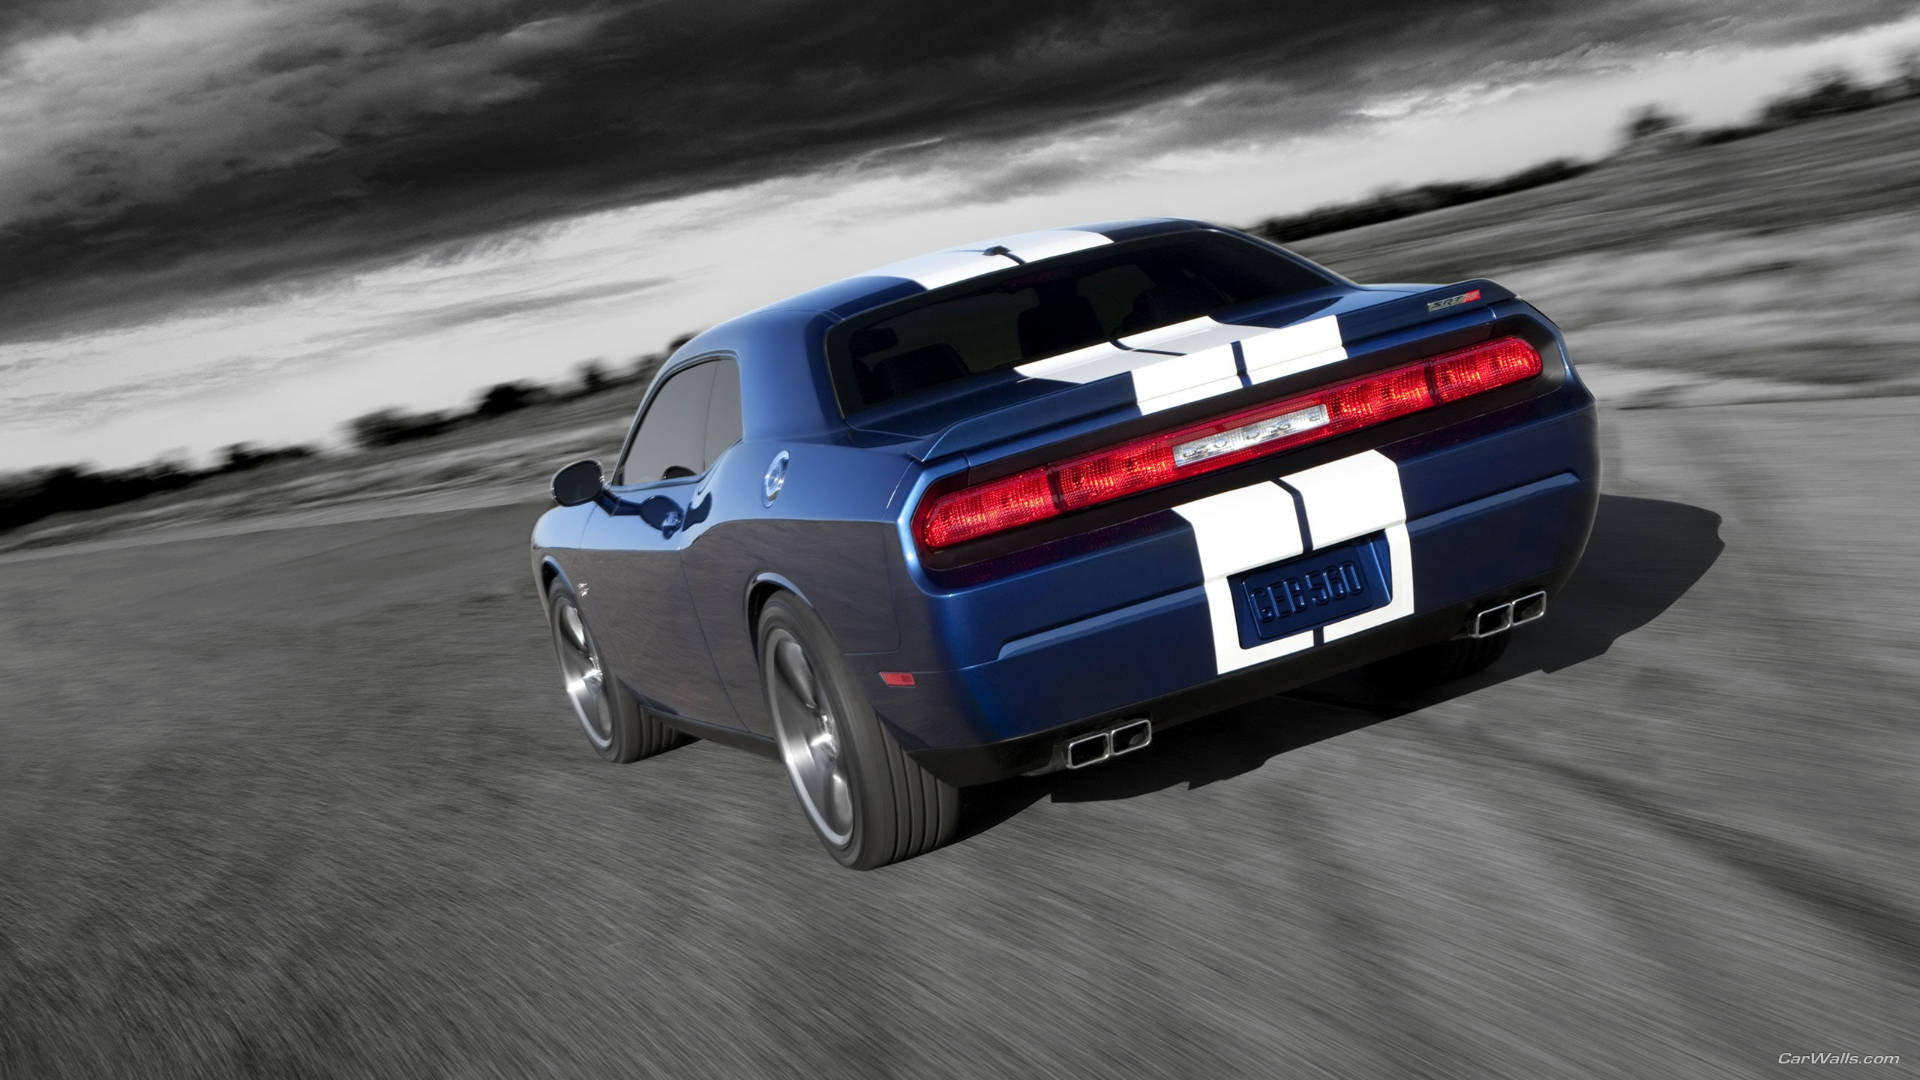 A Racing 2012 Blue Dodge Challenger Wallpaper